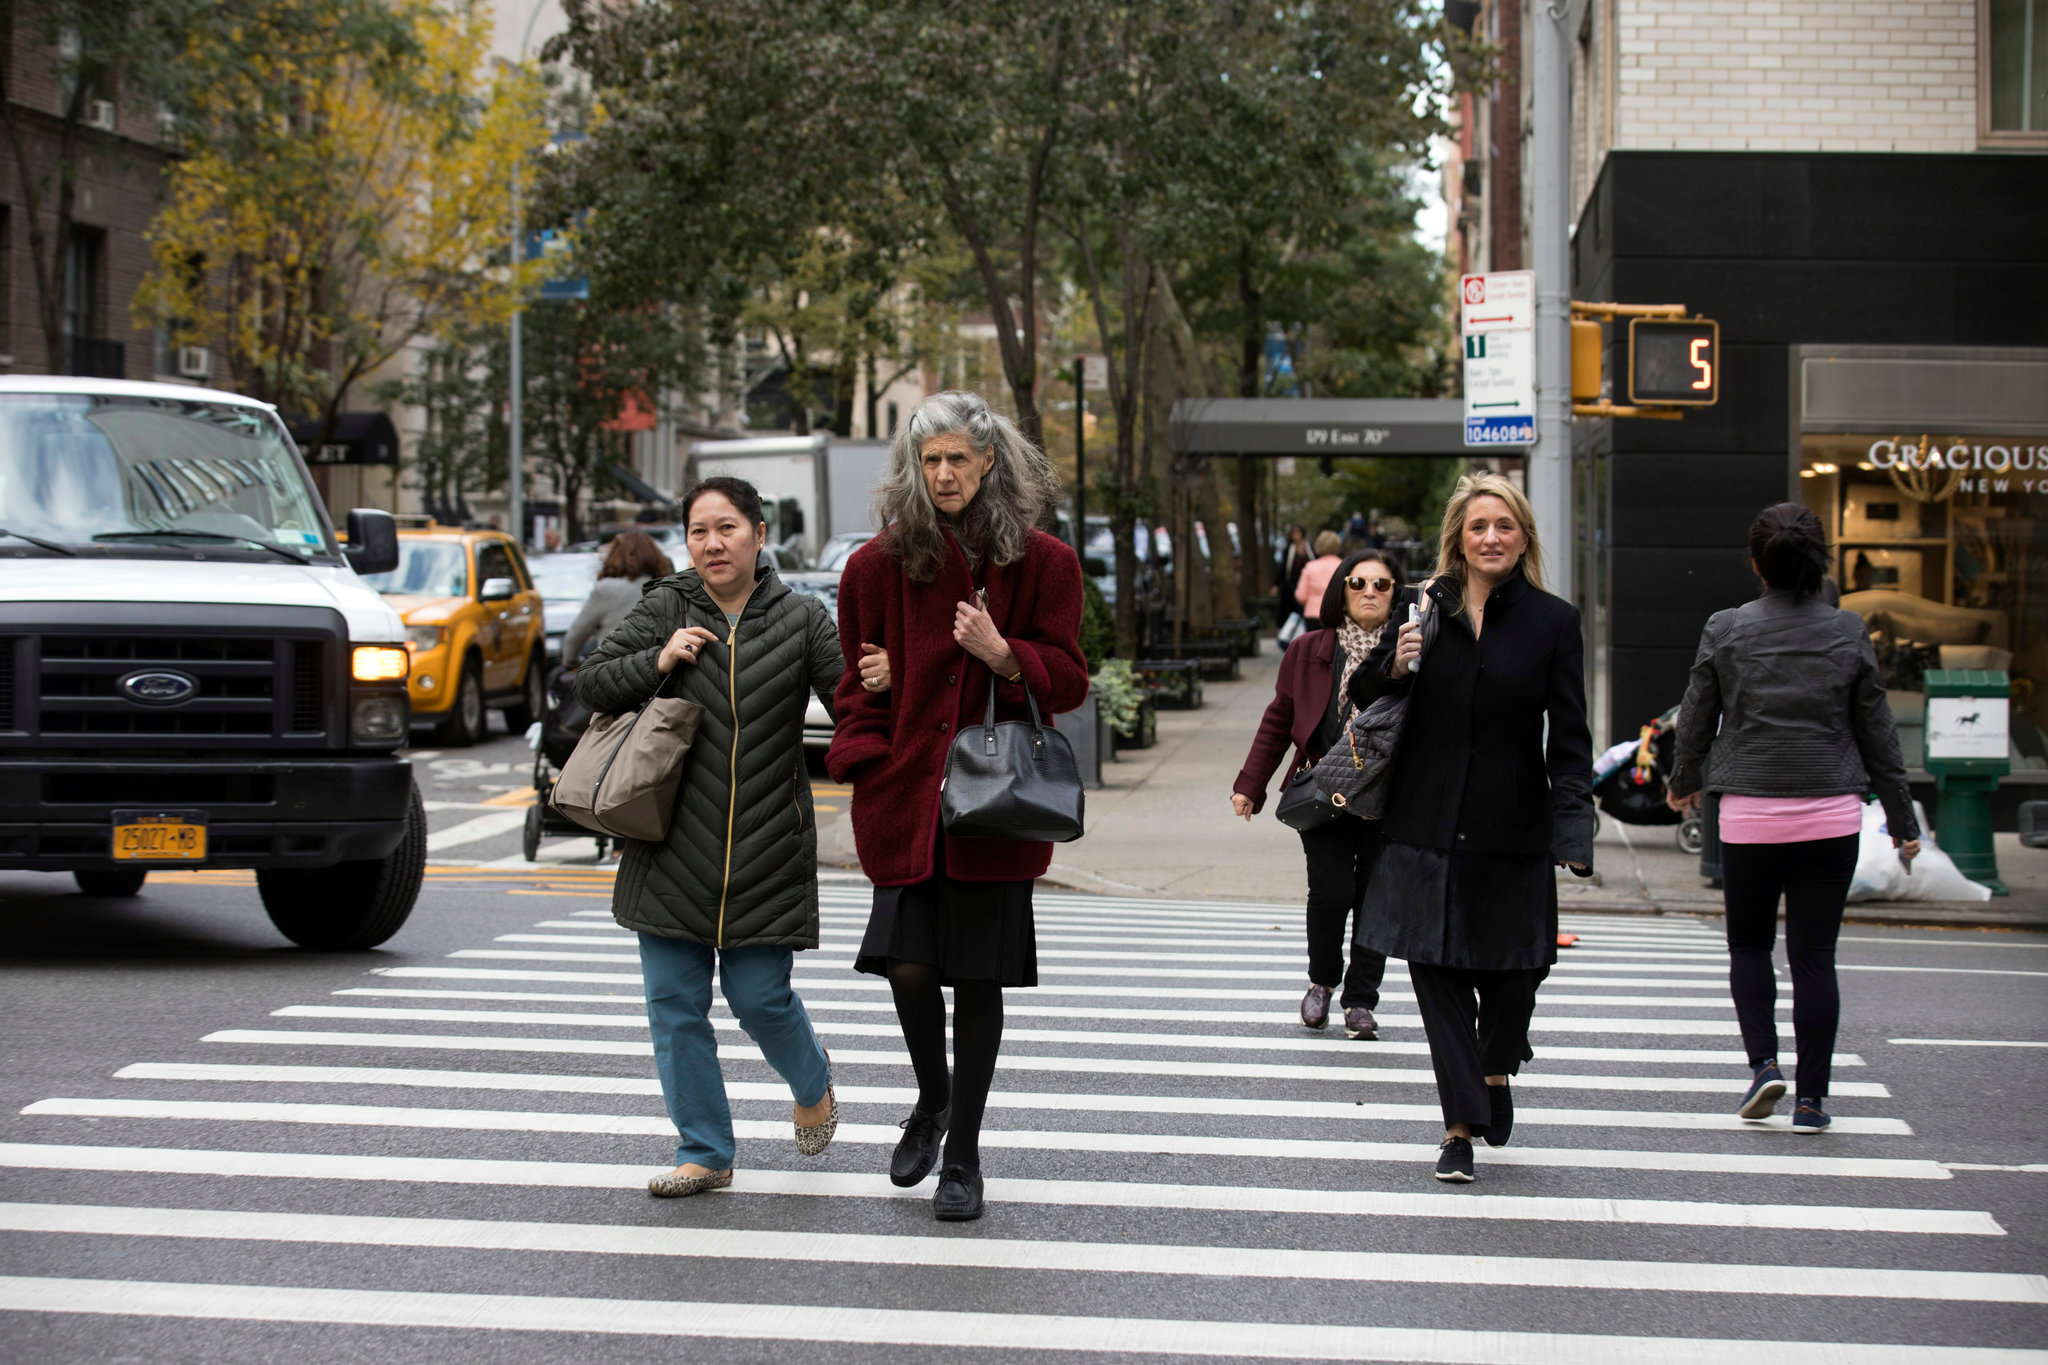 Pedestrian safety in the Bronx 2